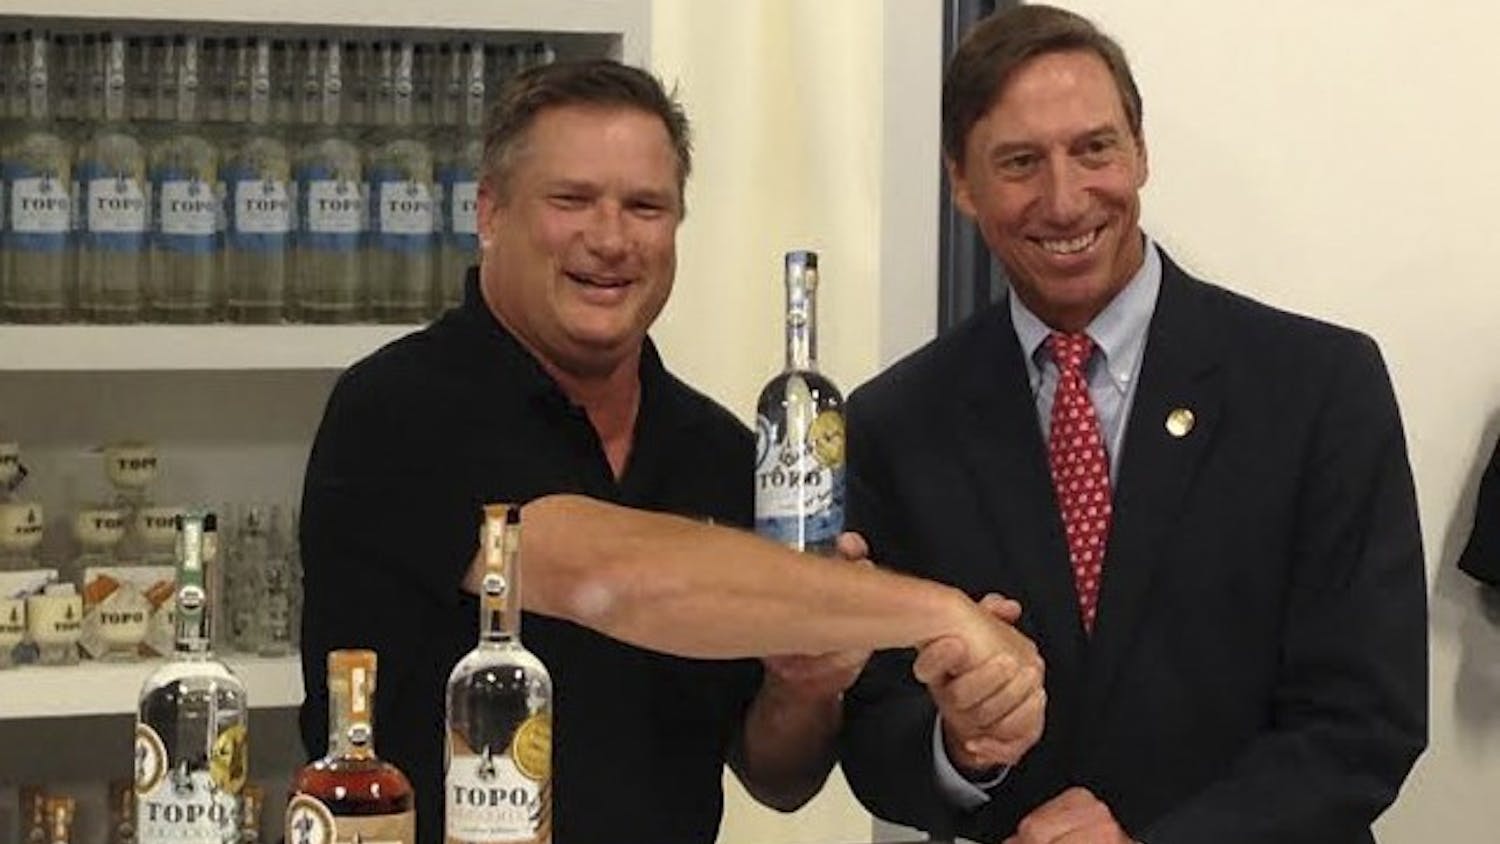 TOPO Distillery owner Scott Maitland (left) sells liquor to state Sen. Rick Gunn.